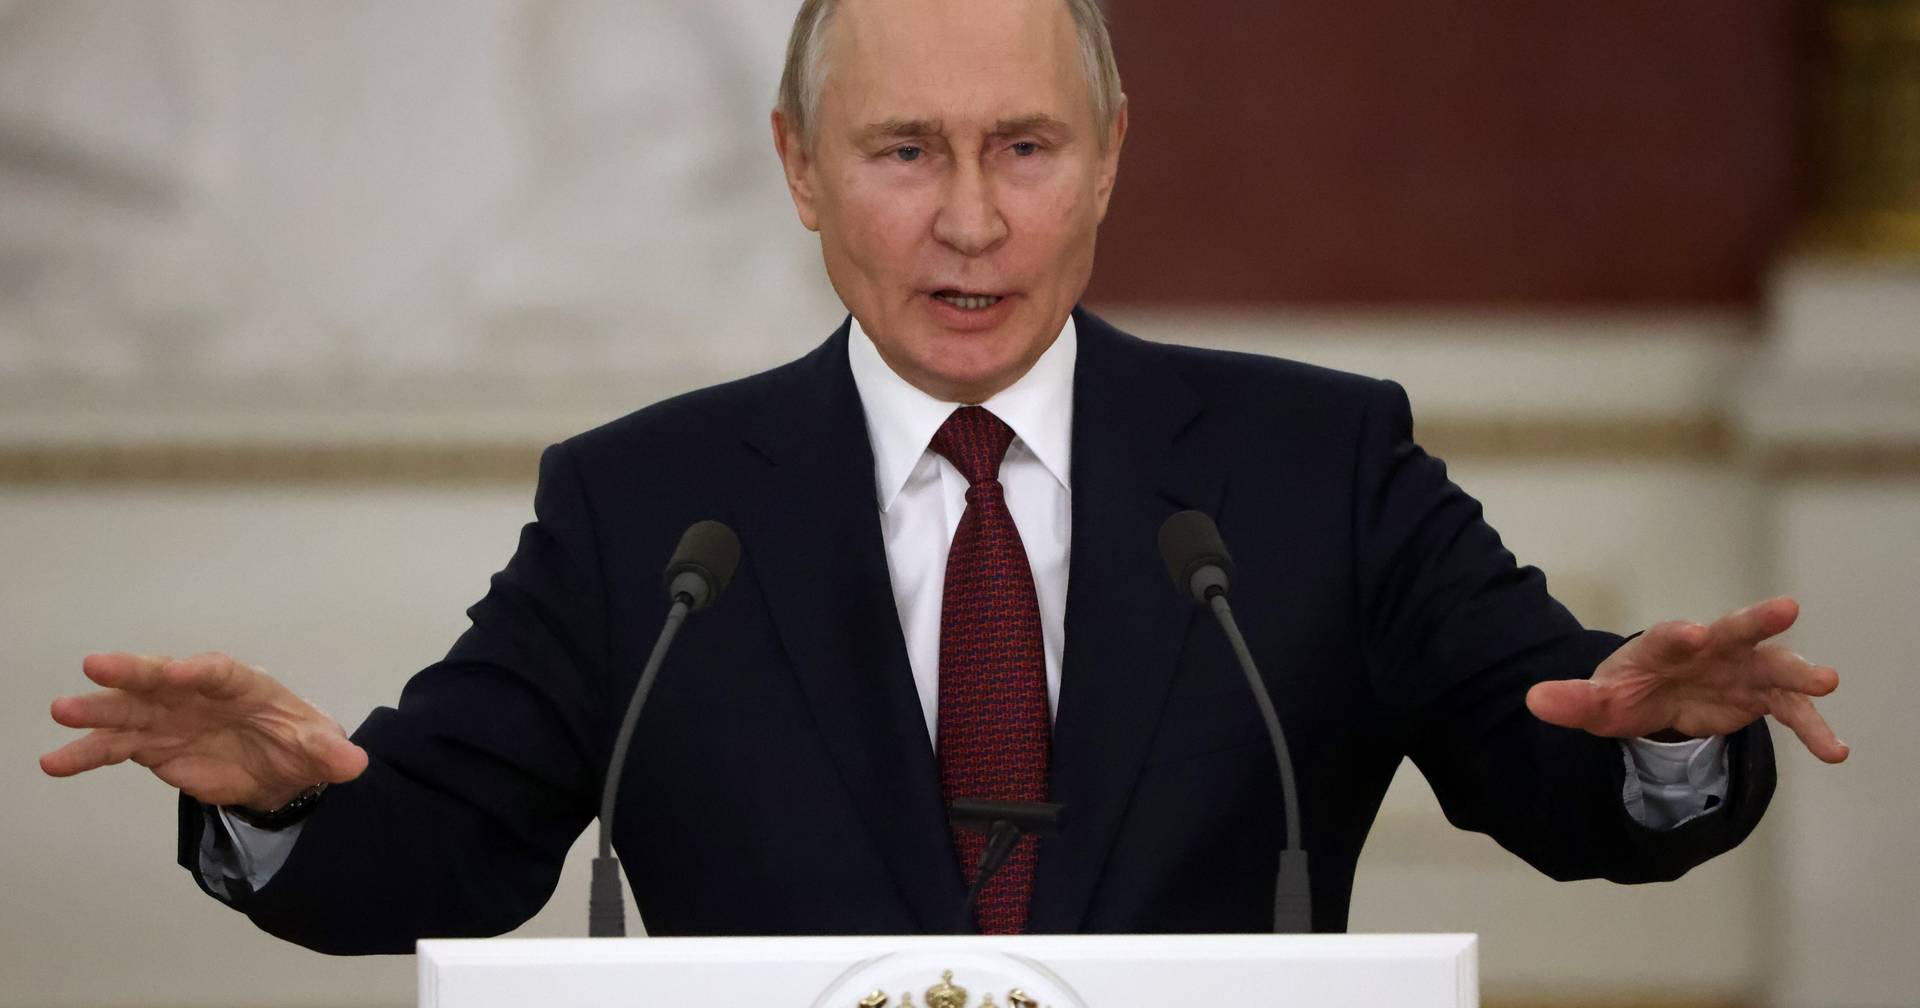 Putin regaló anillos a exlíderes soviéticos y es comparado con ‘El señor de los anillos’